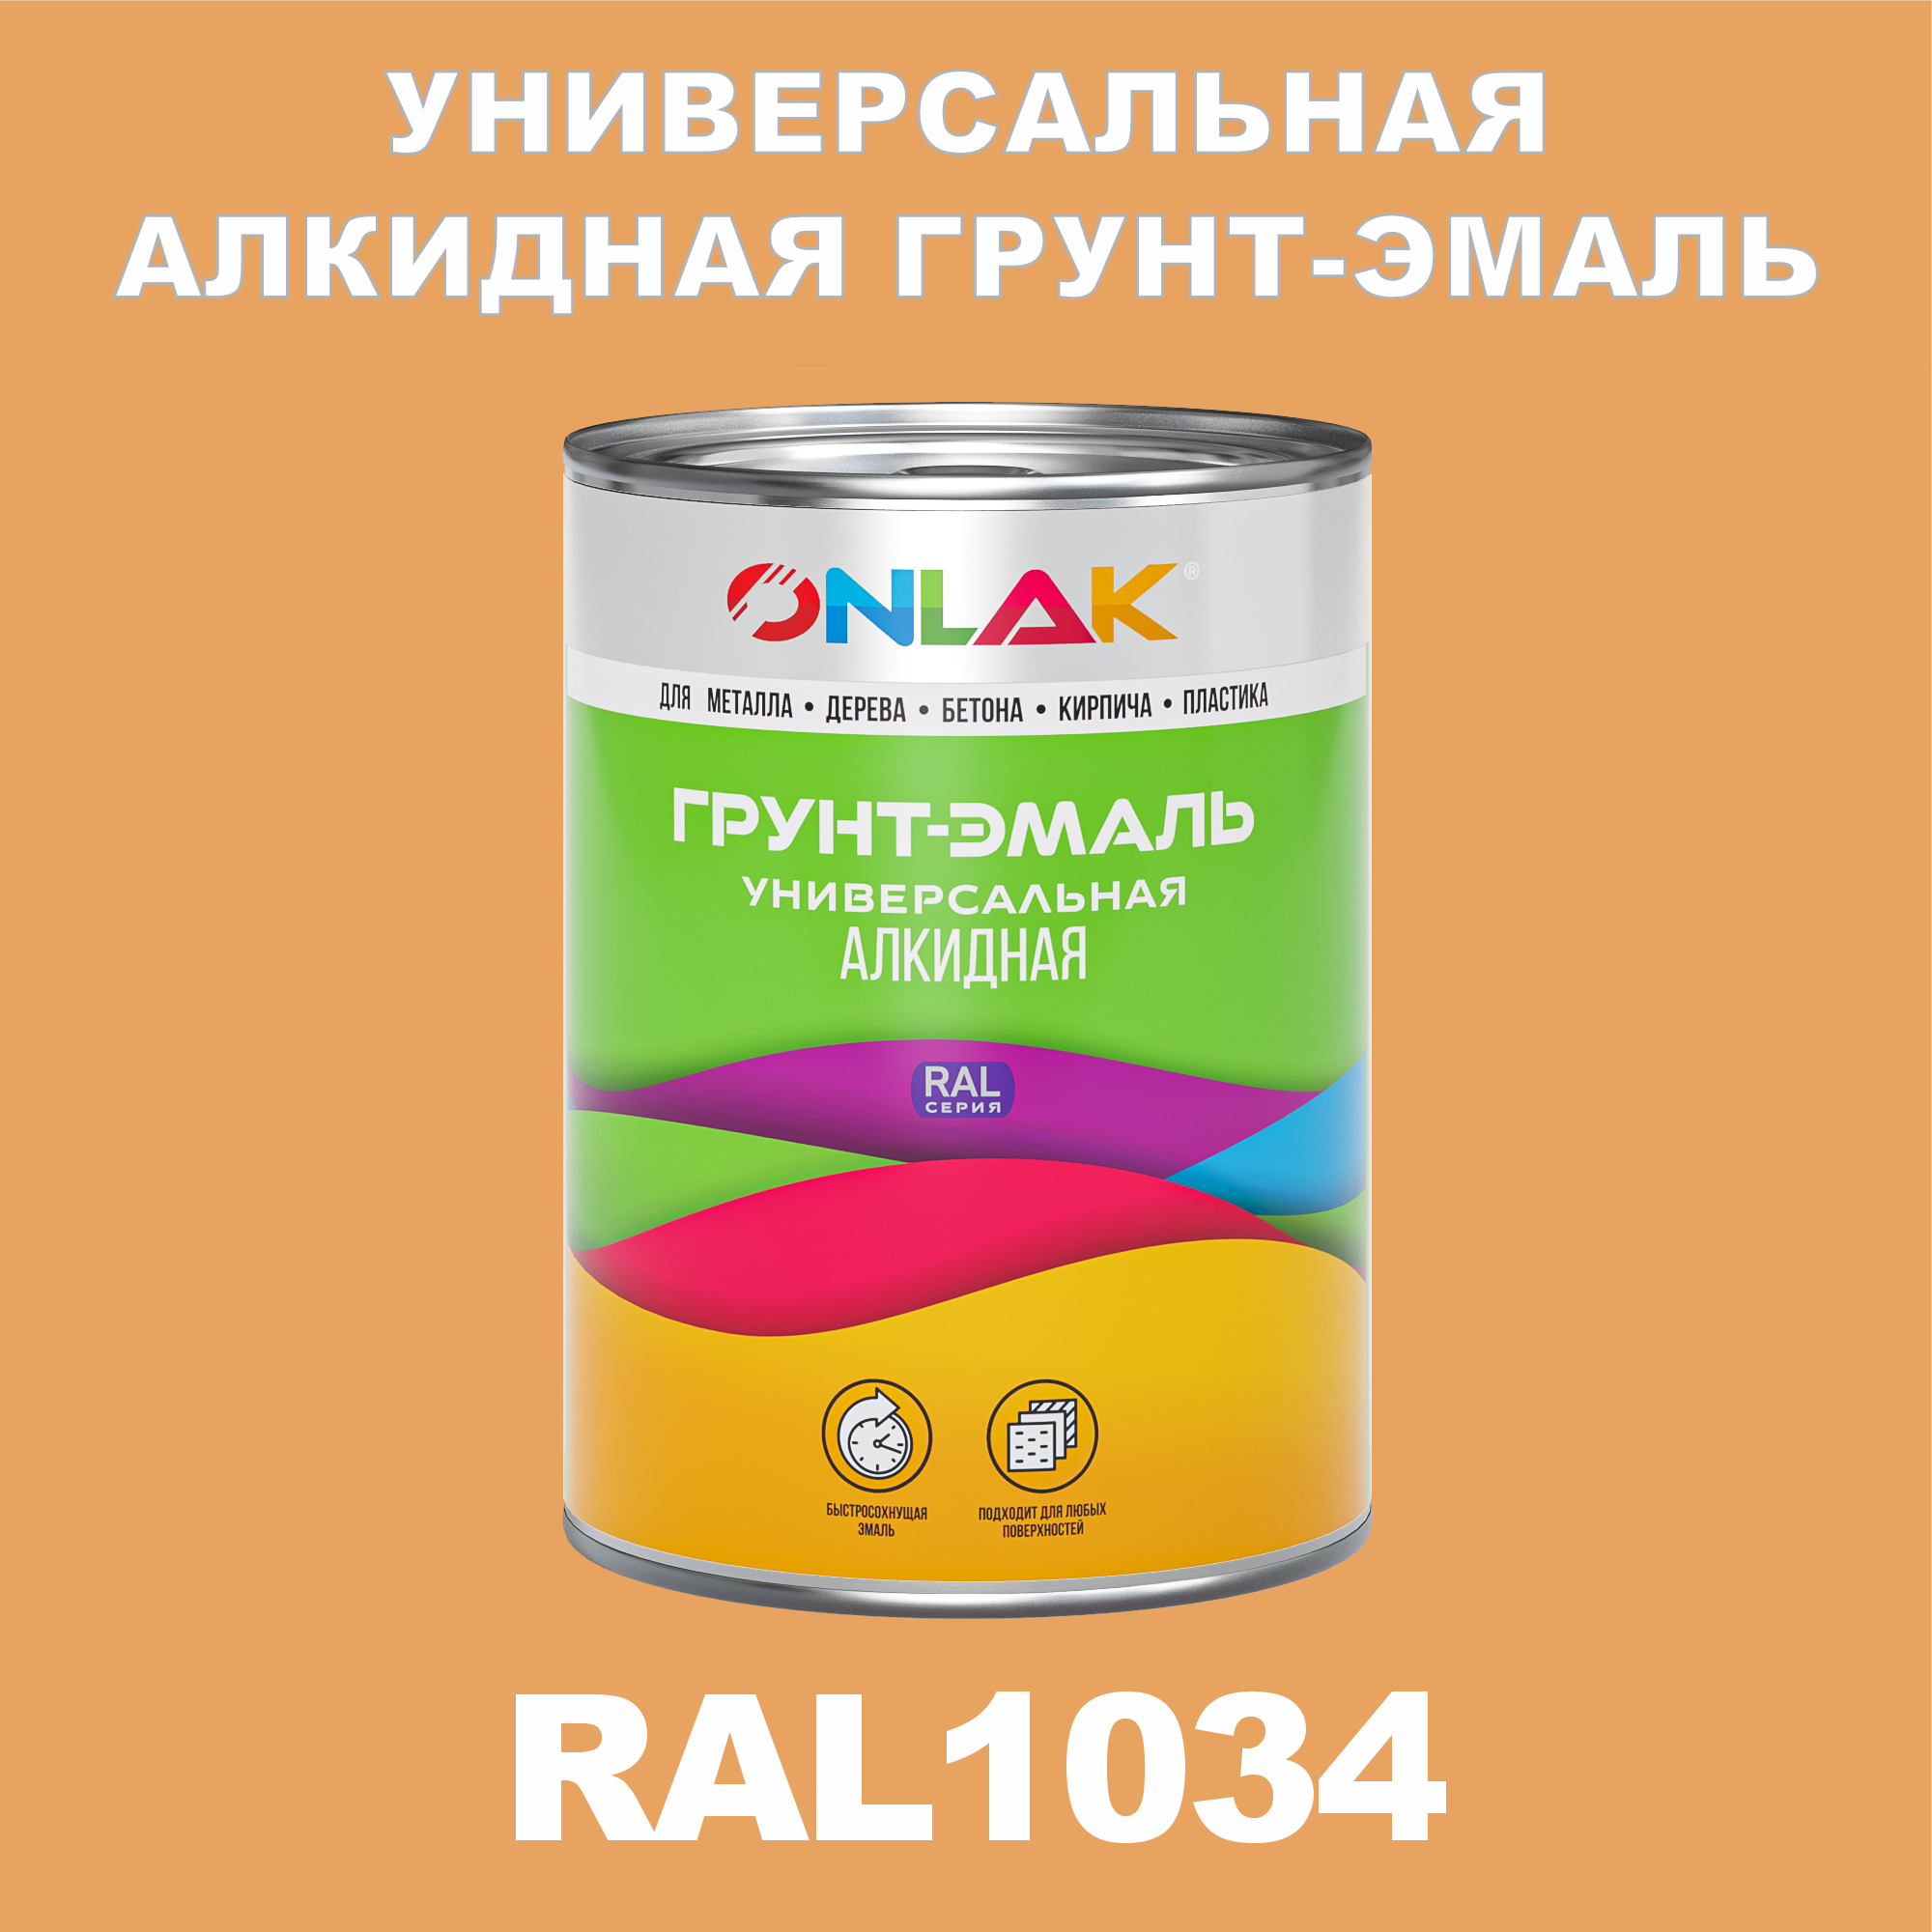 Грунт-эмаль ONLAK 1К RAL1034 антикоррозионная алкидная по металлу по ржавчине 1 кг грунт эмаль yollo по ржавчине алкидная серая 0 9 кг